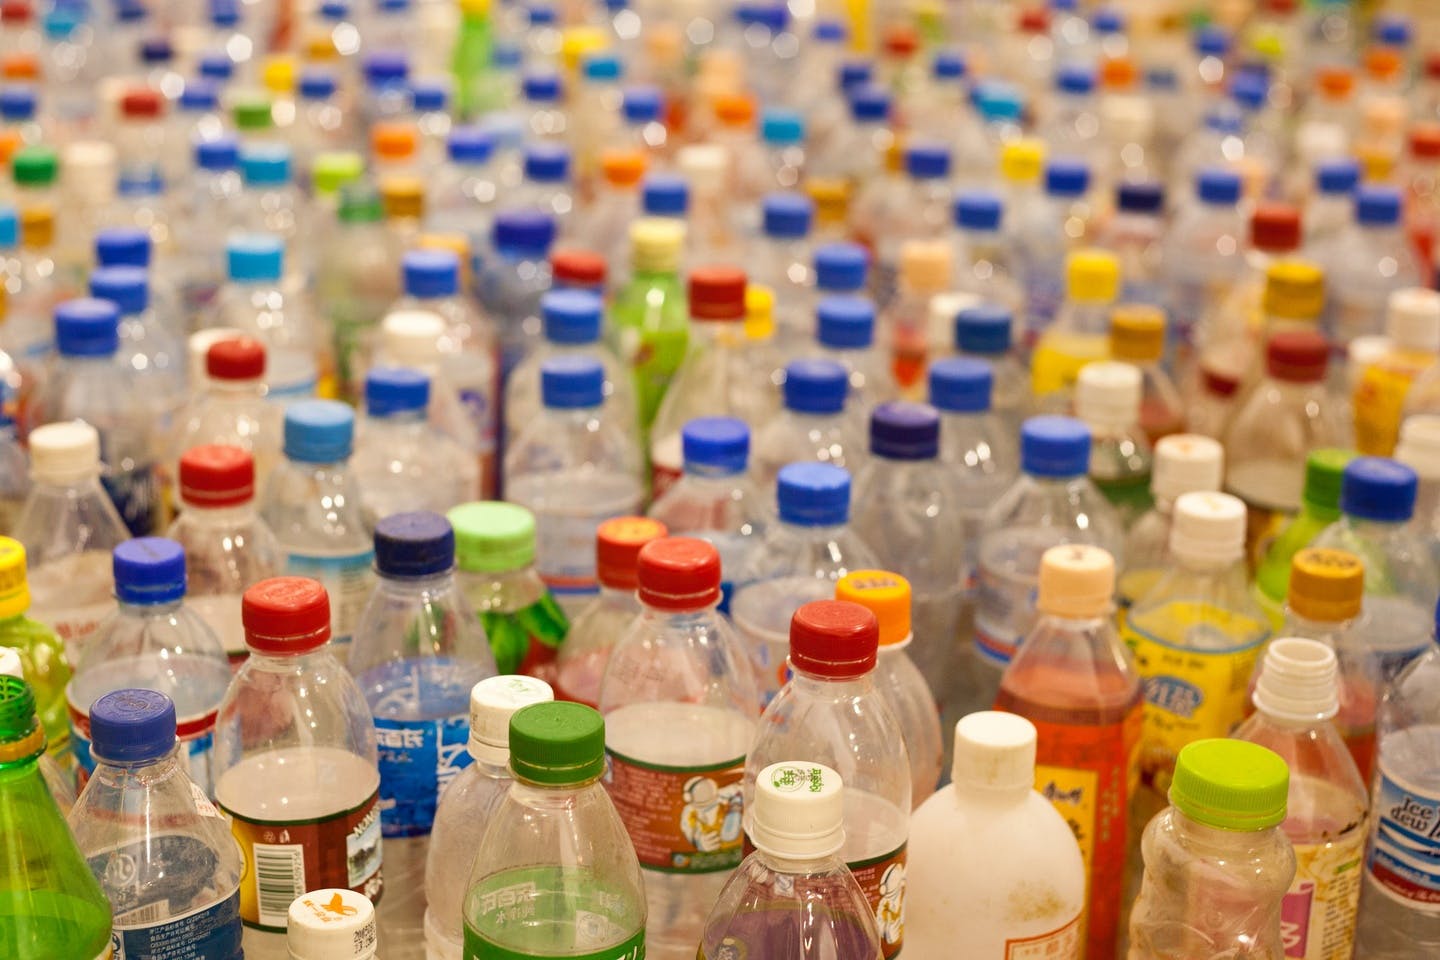 Reusable Water Bottles Reduce Waste, Bottle Manufacturer